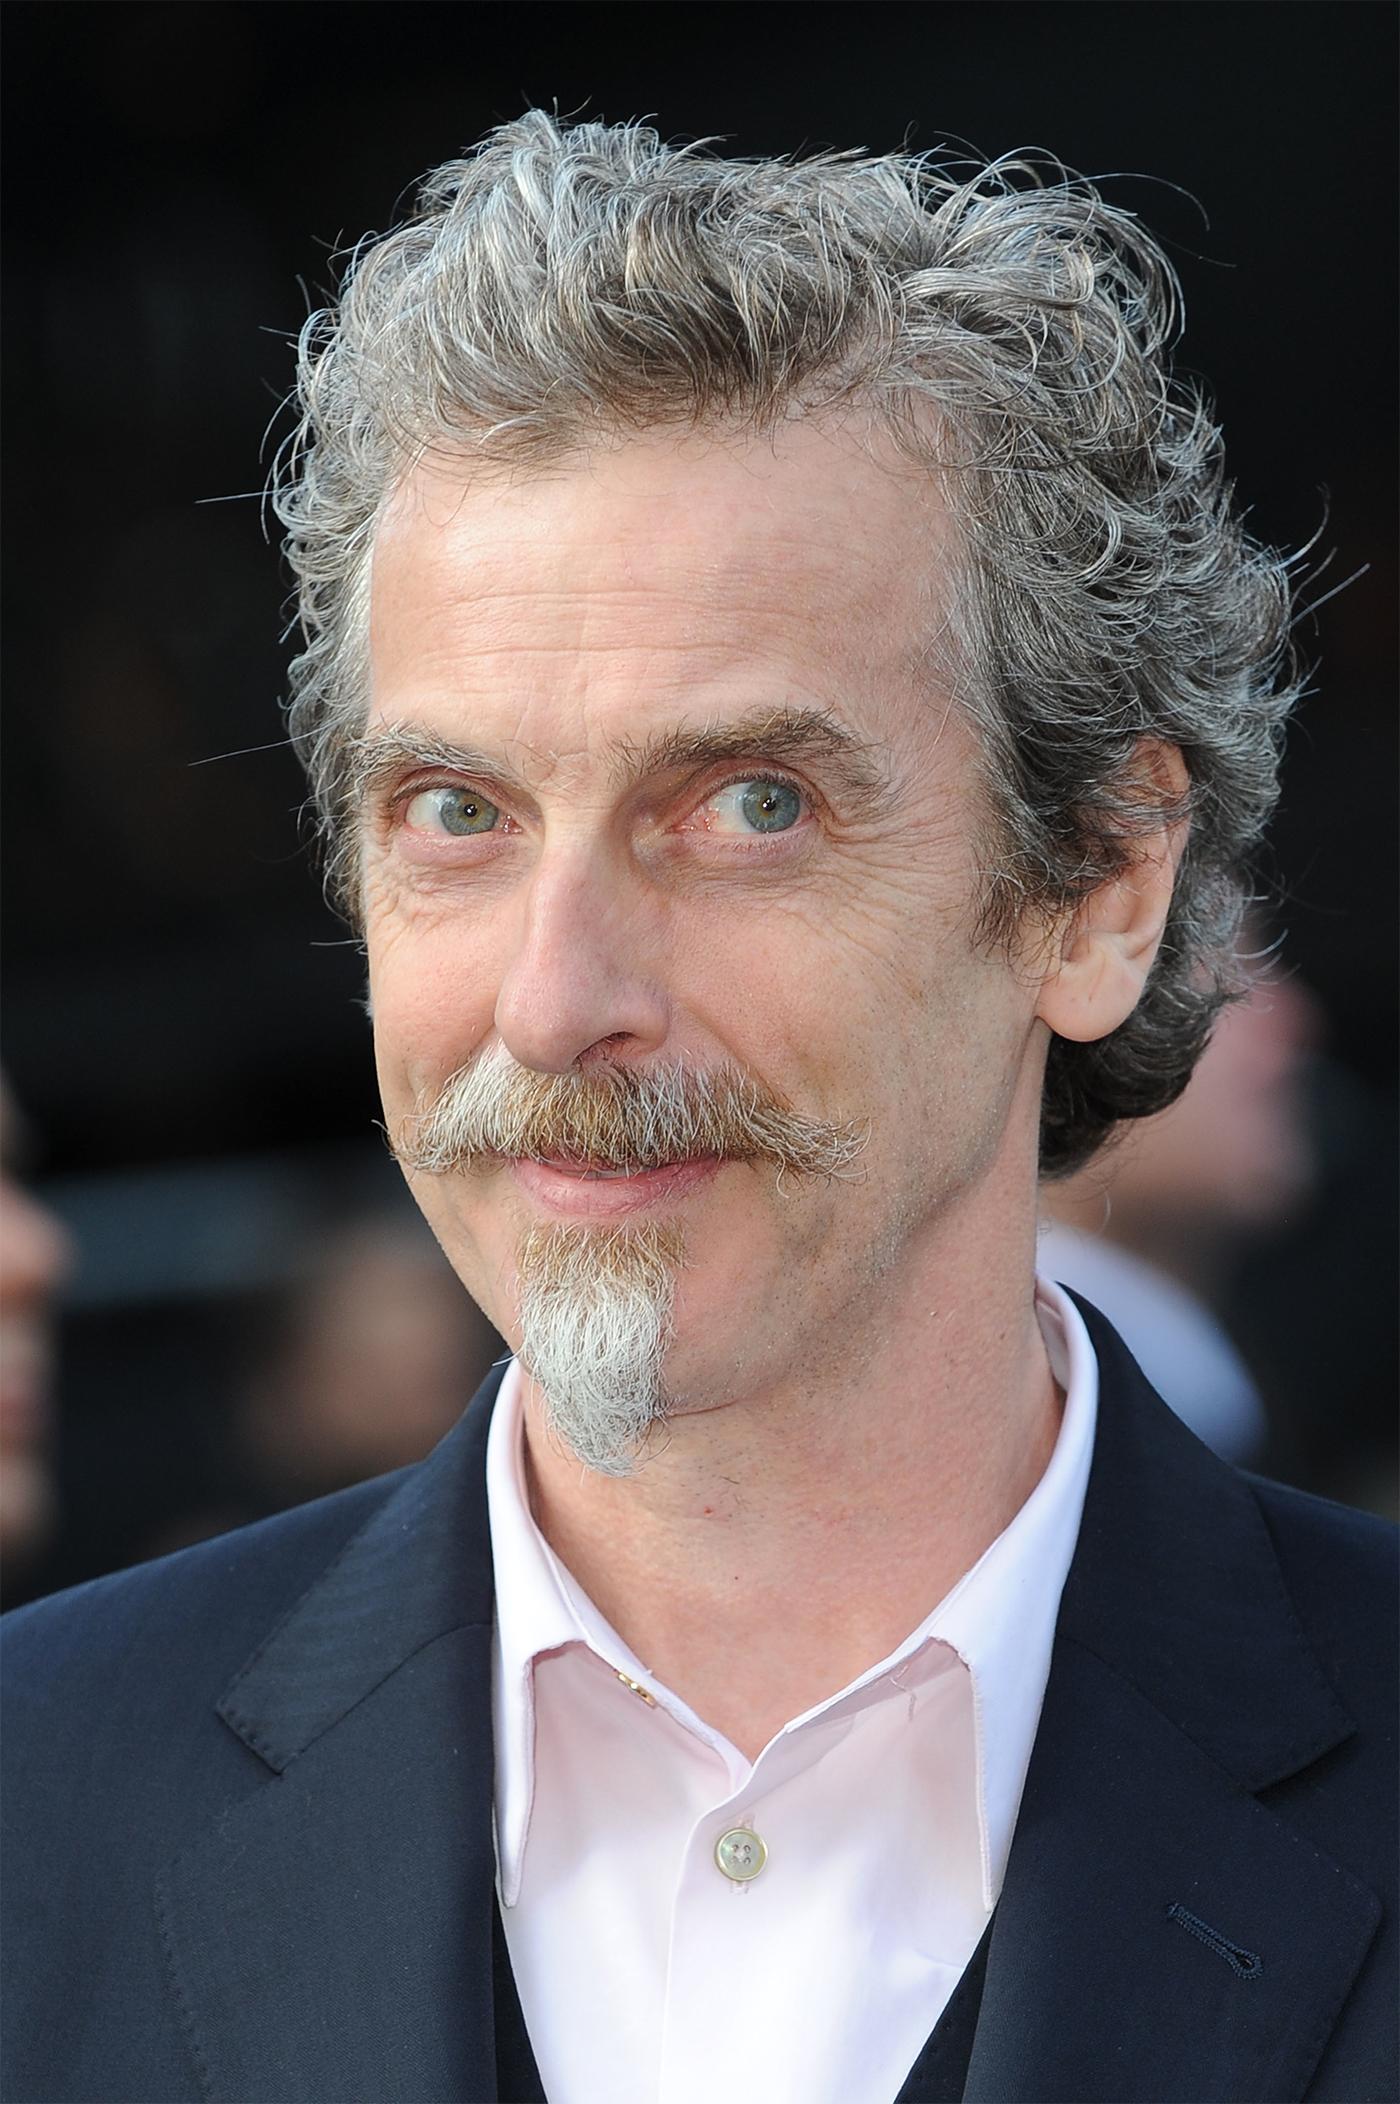 Skådespelaren Peter Capaldi tar över rollen som ”Dr. Who” i BBC-serien med samma namn.